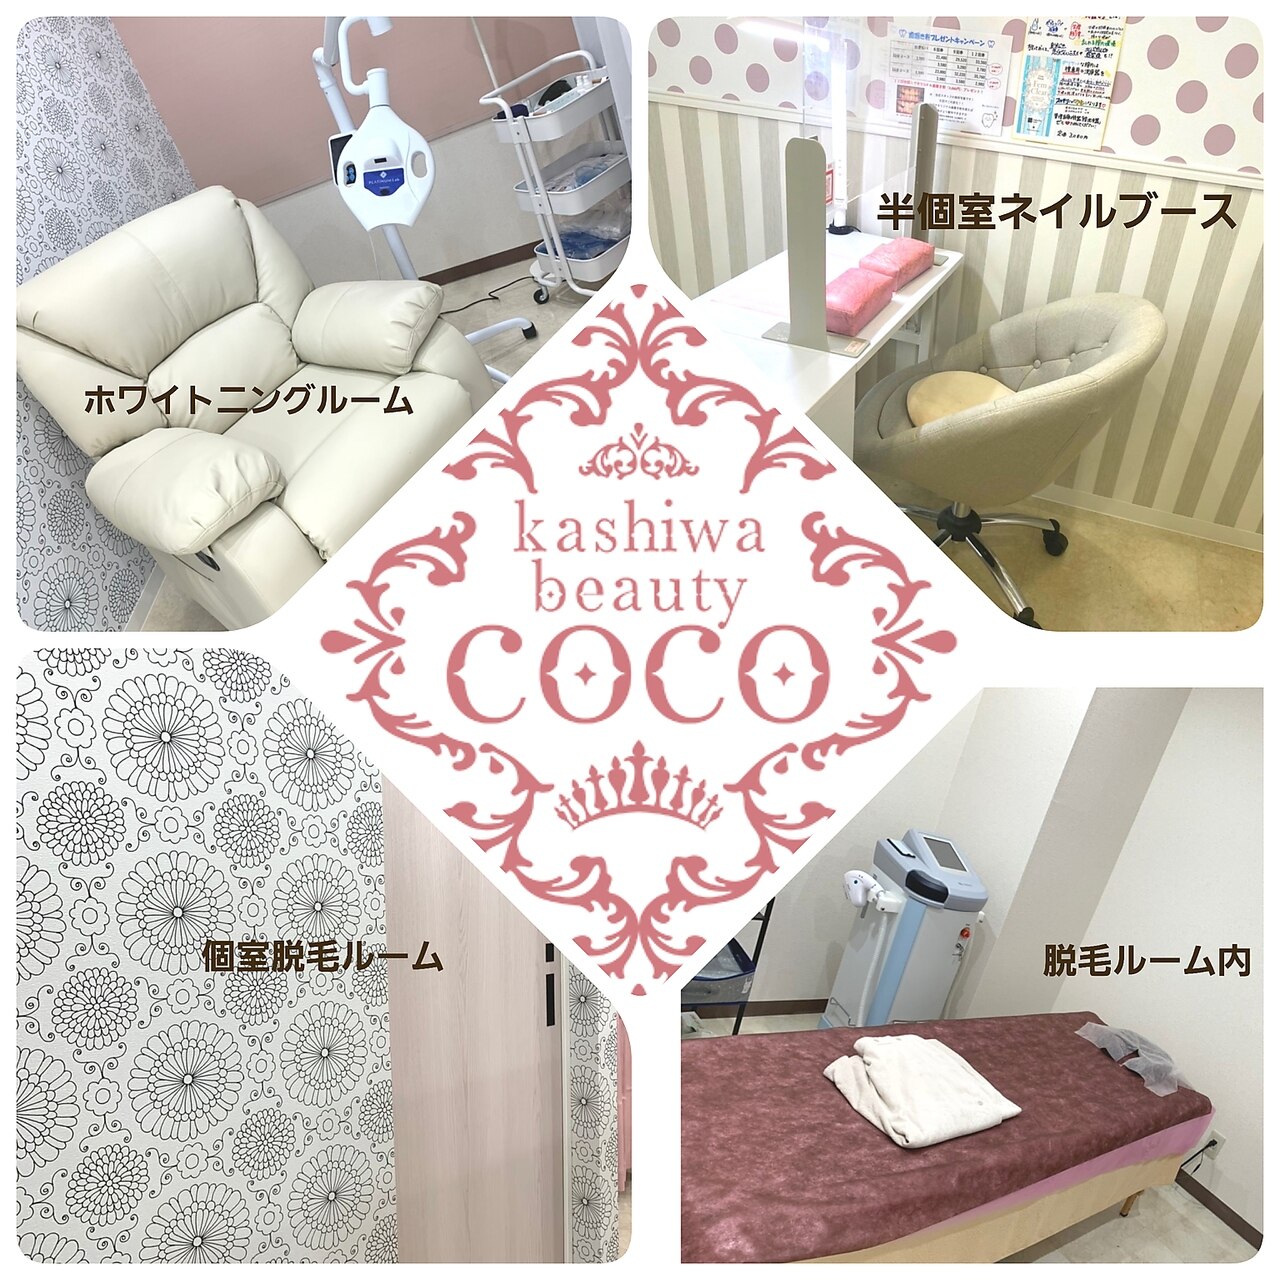 カシワビューティーココ(kashiwa beauty coco)の紹介画像